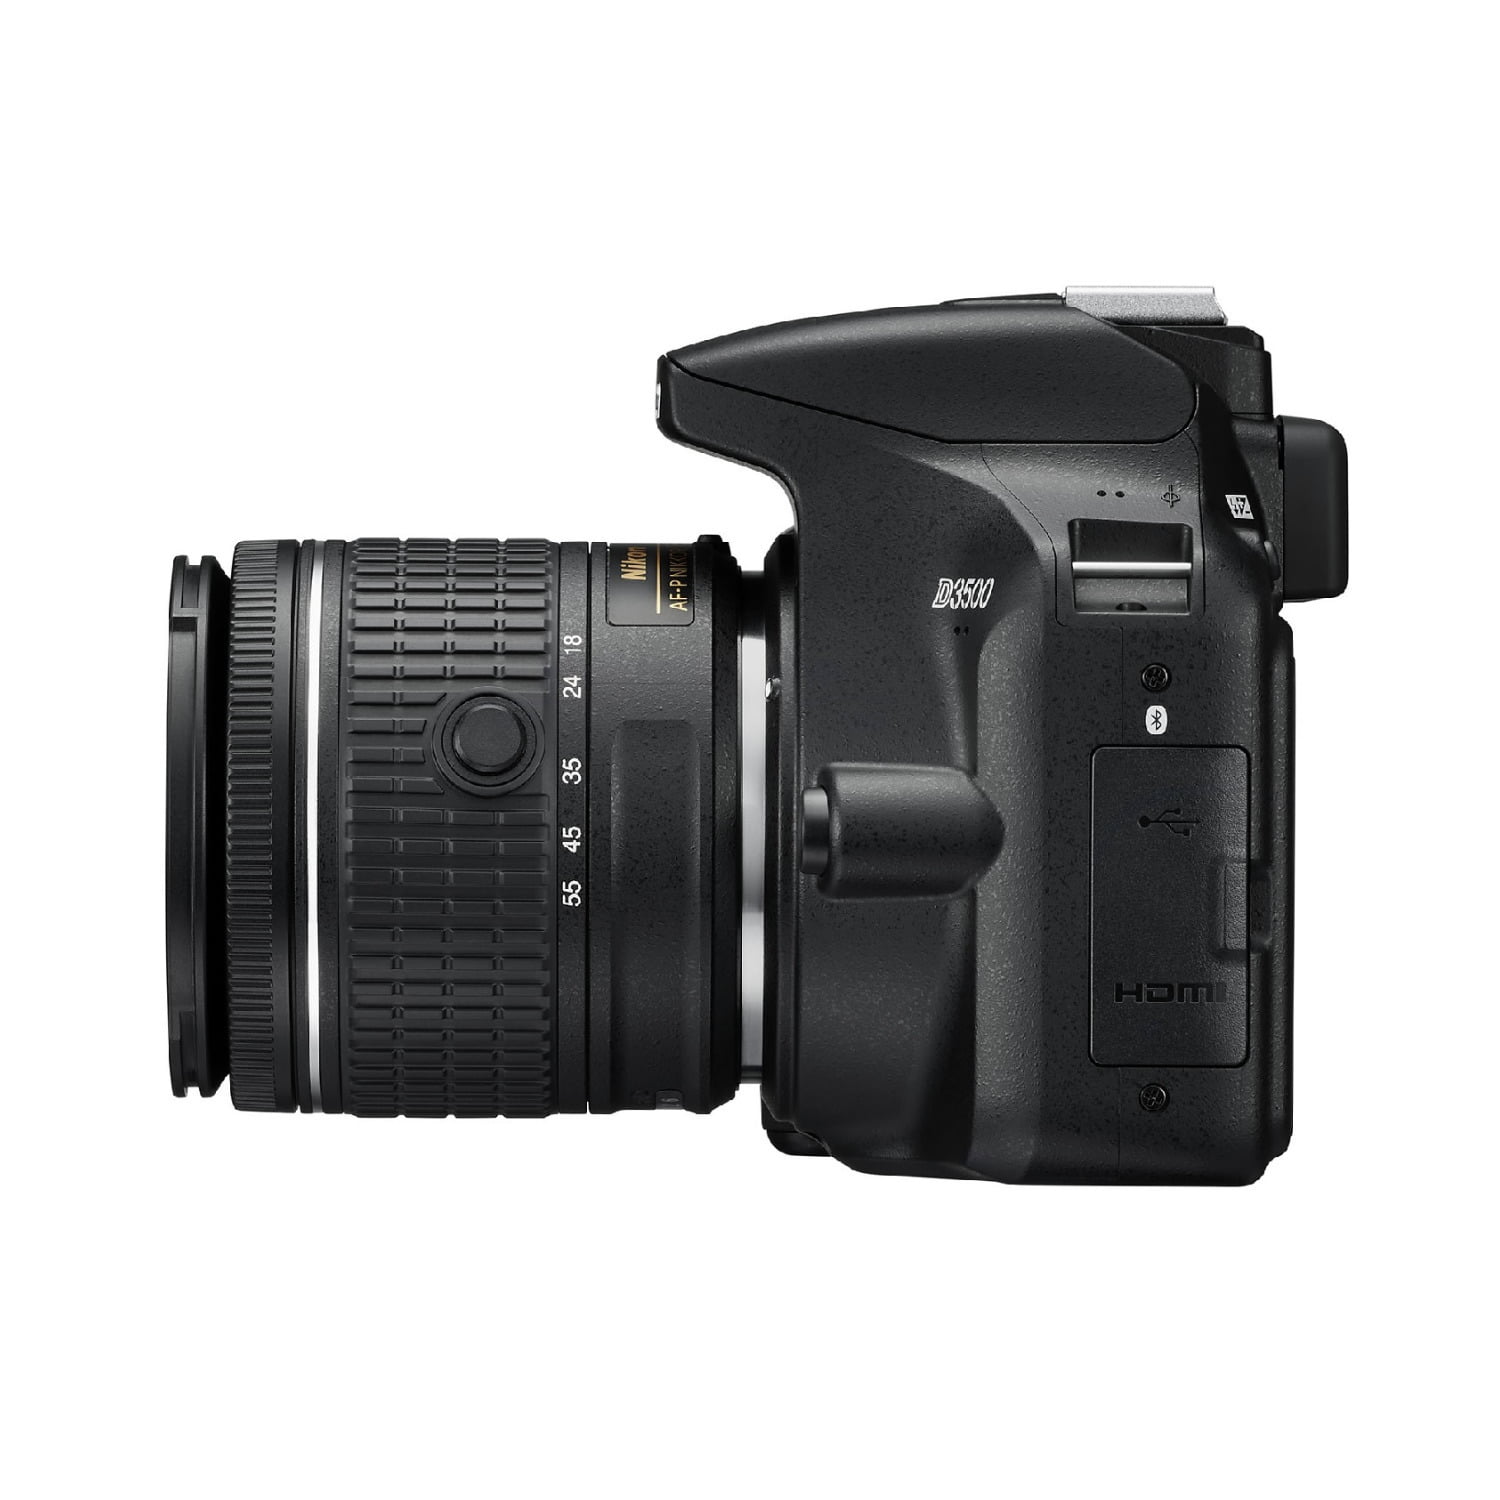 Nikon D3500 DSLR Camera with AF-P DX NIKKOR 18-55mm VR Lens with